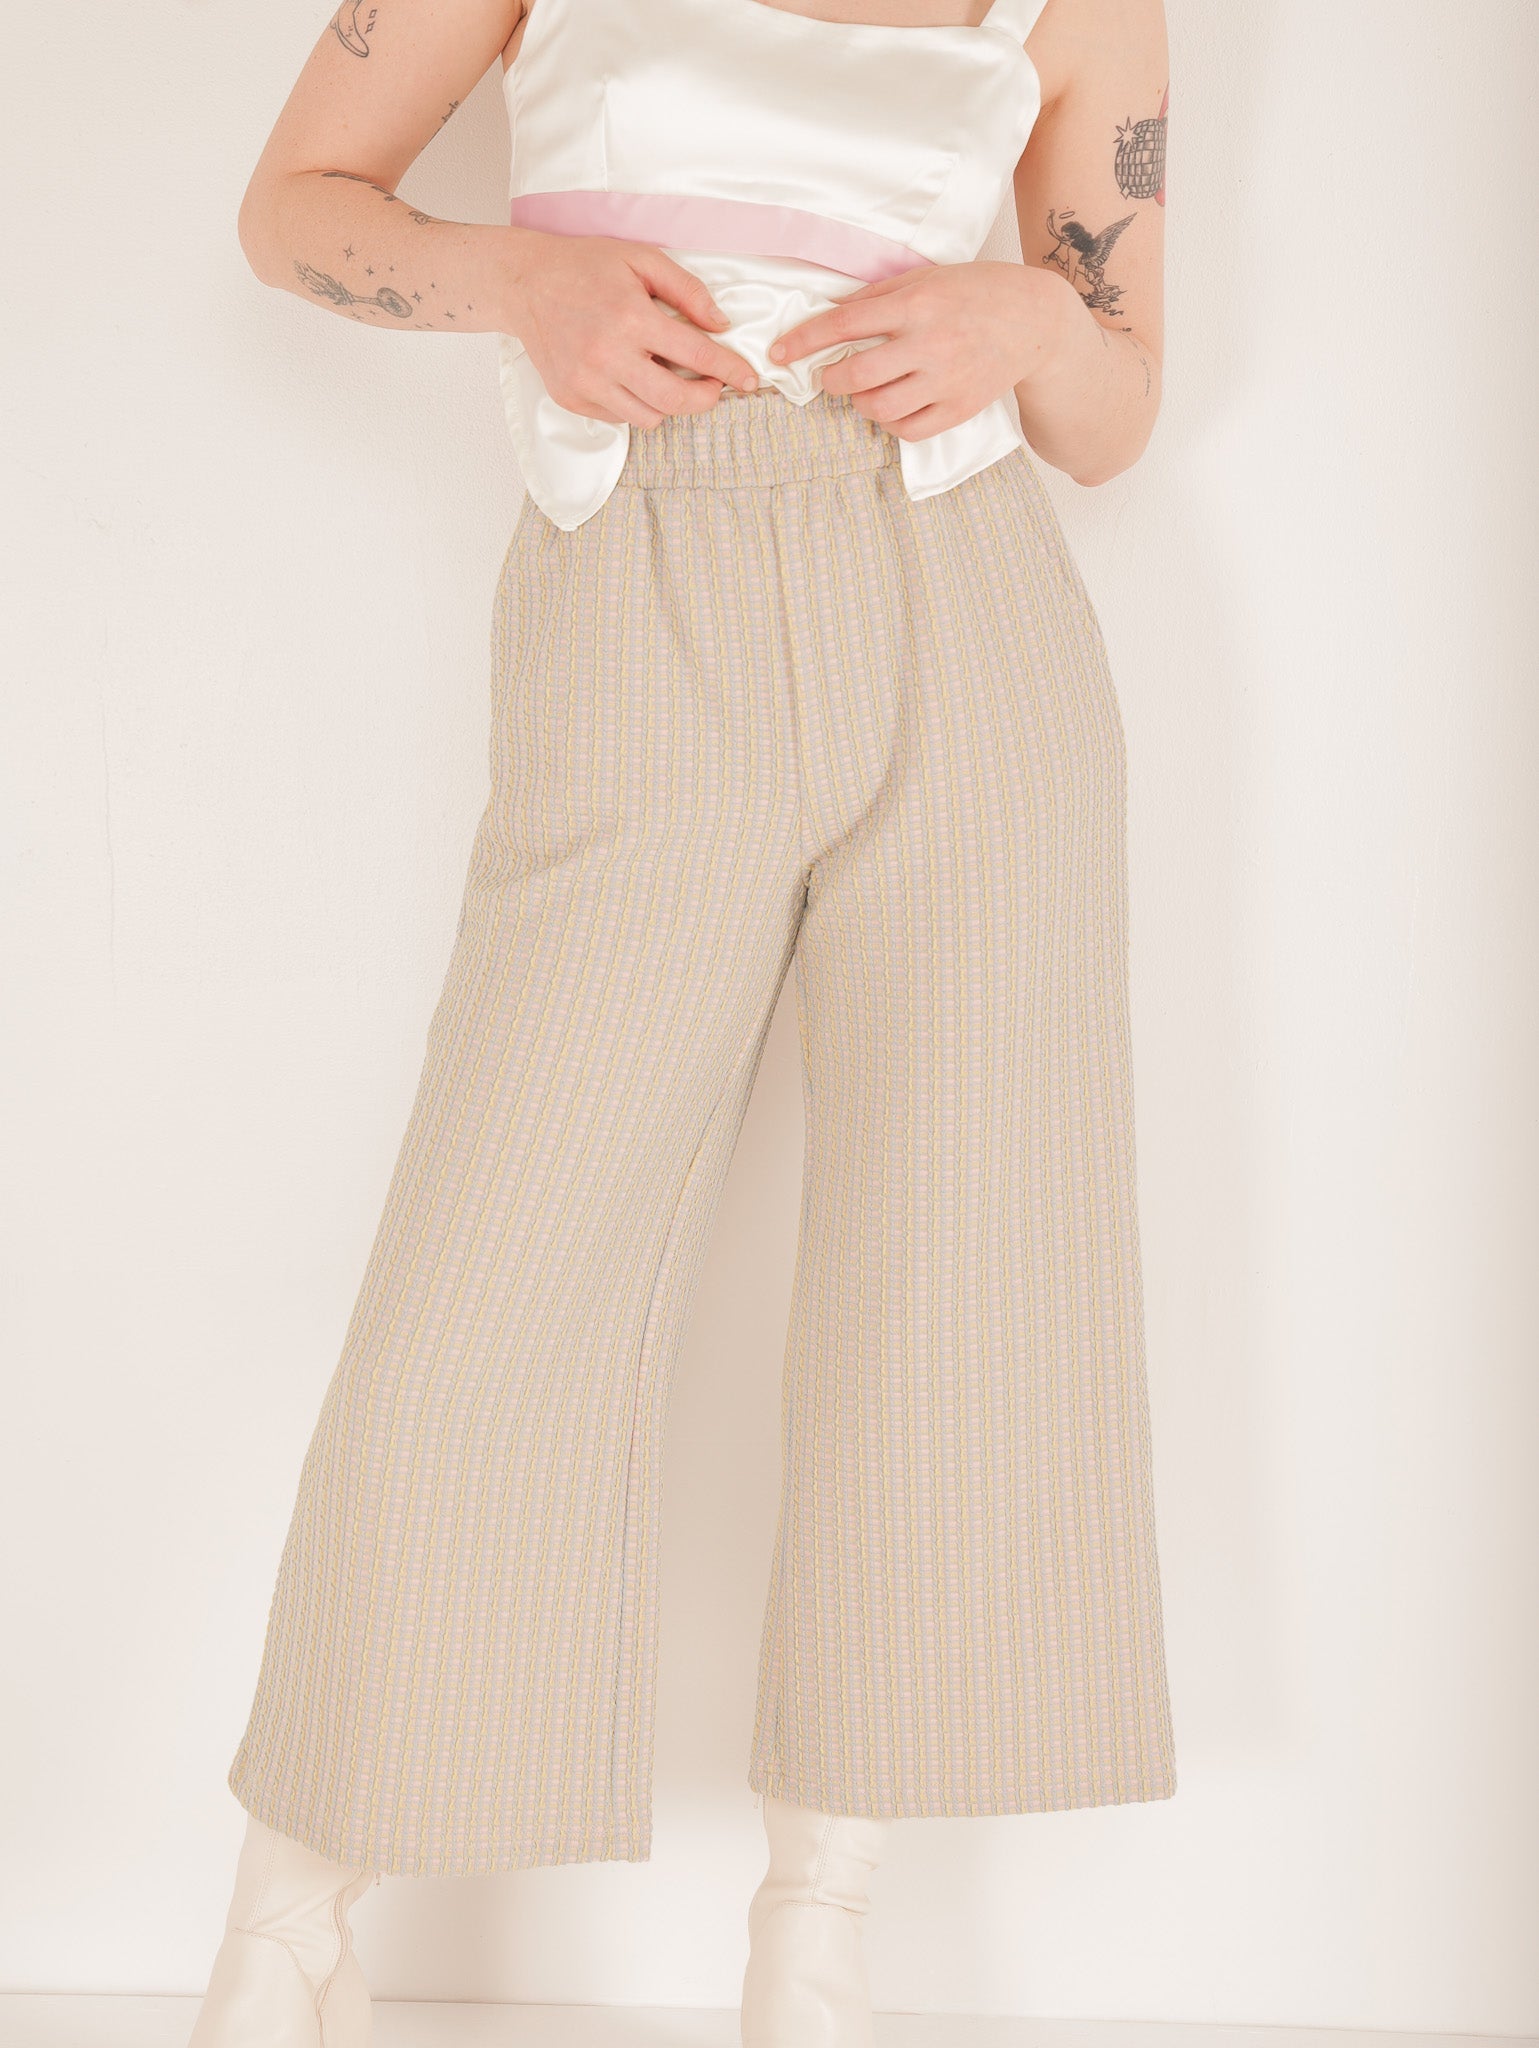 Molly Green - Irene Comfy Pants - Pants